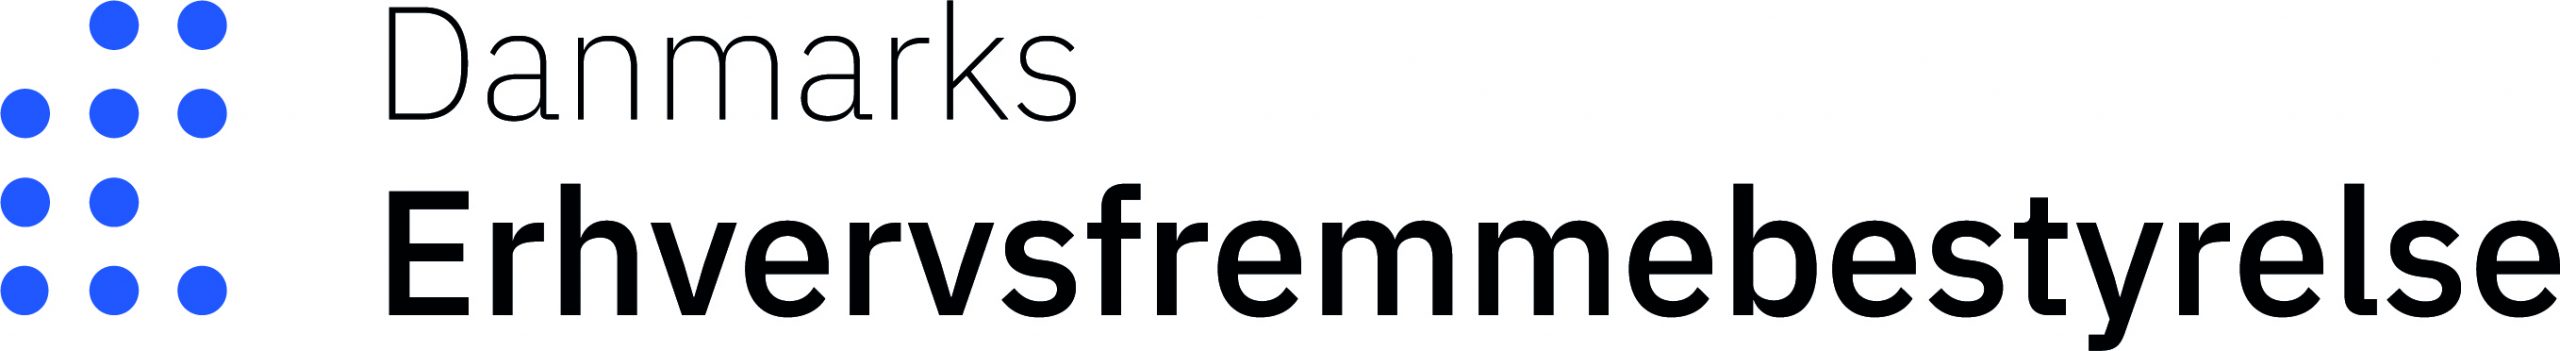 Billede af Danmarks Erhvervsfremmebestyrelse logo